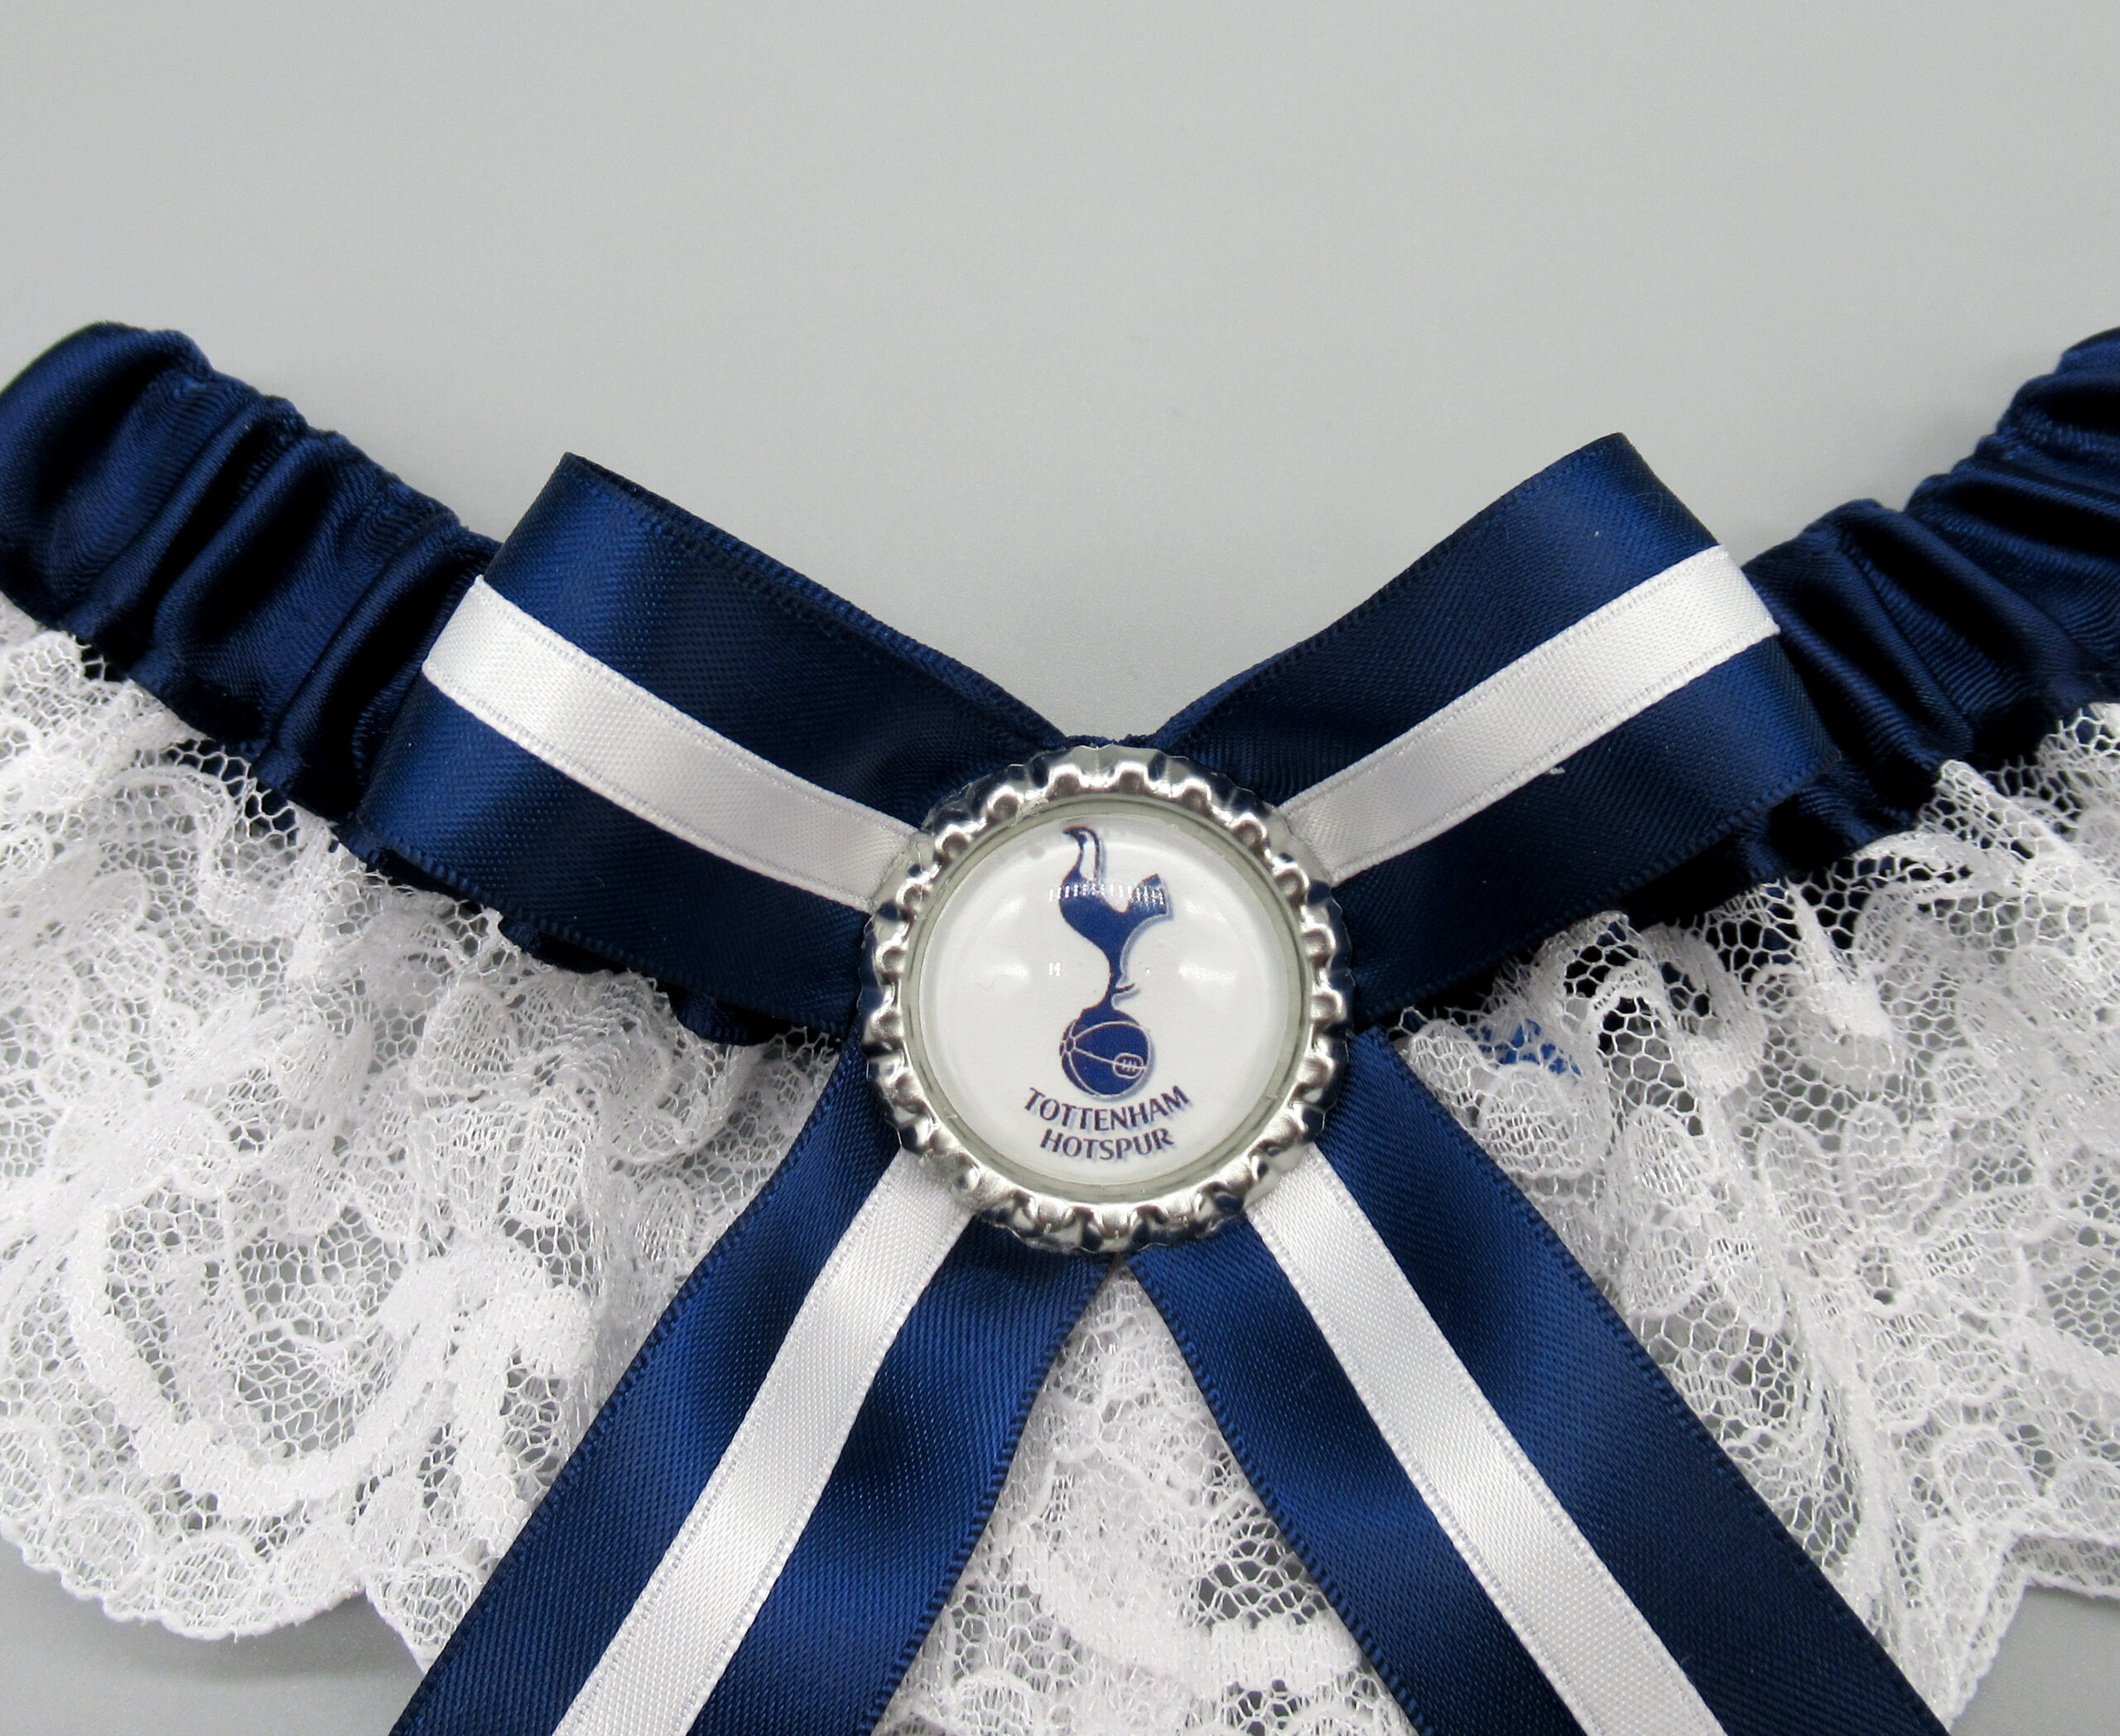 Tottenham hotspur football wedding garter blue lace burlesque new 